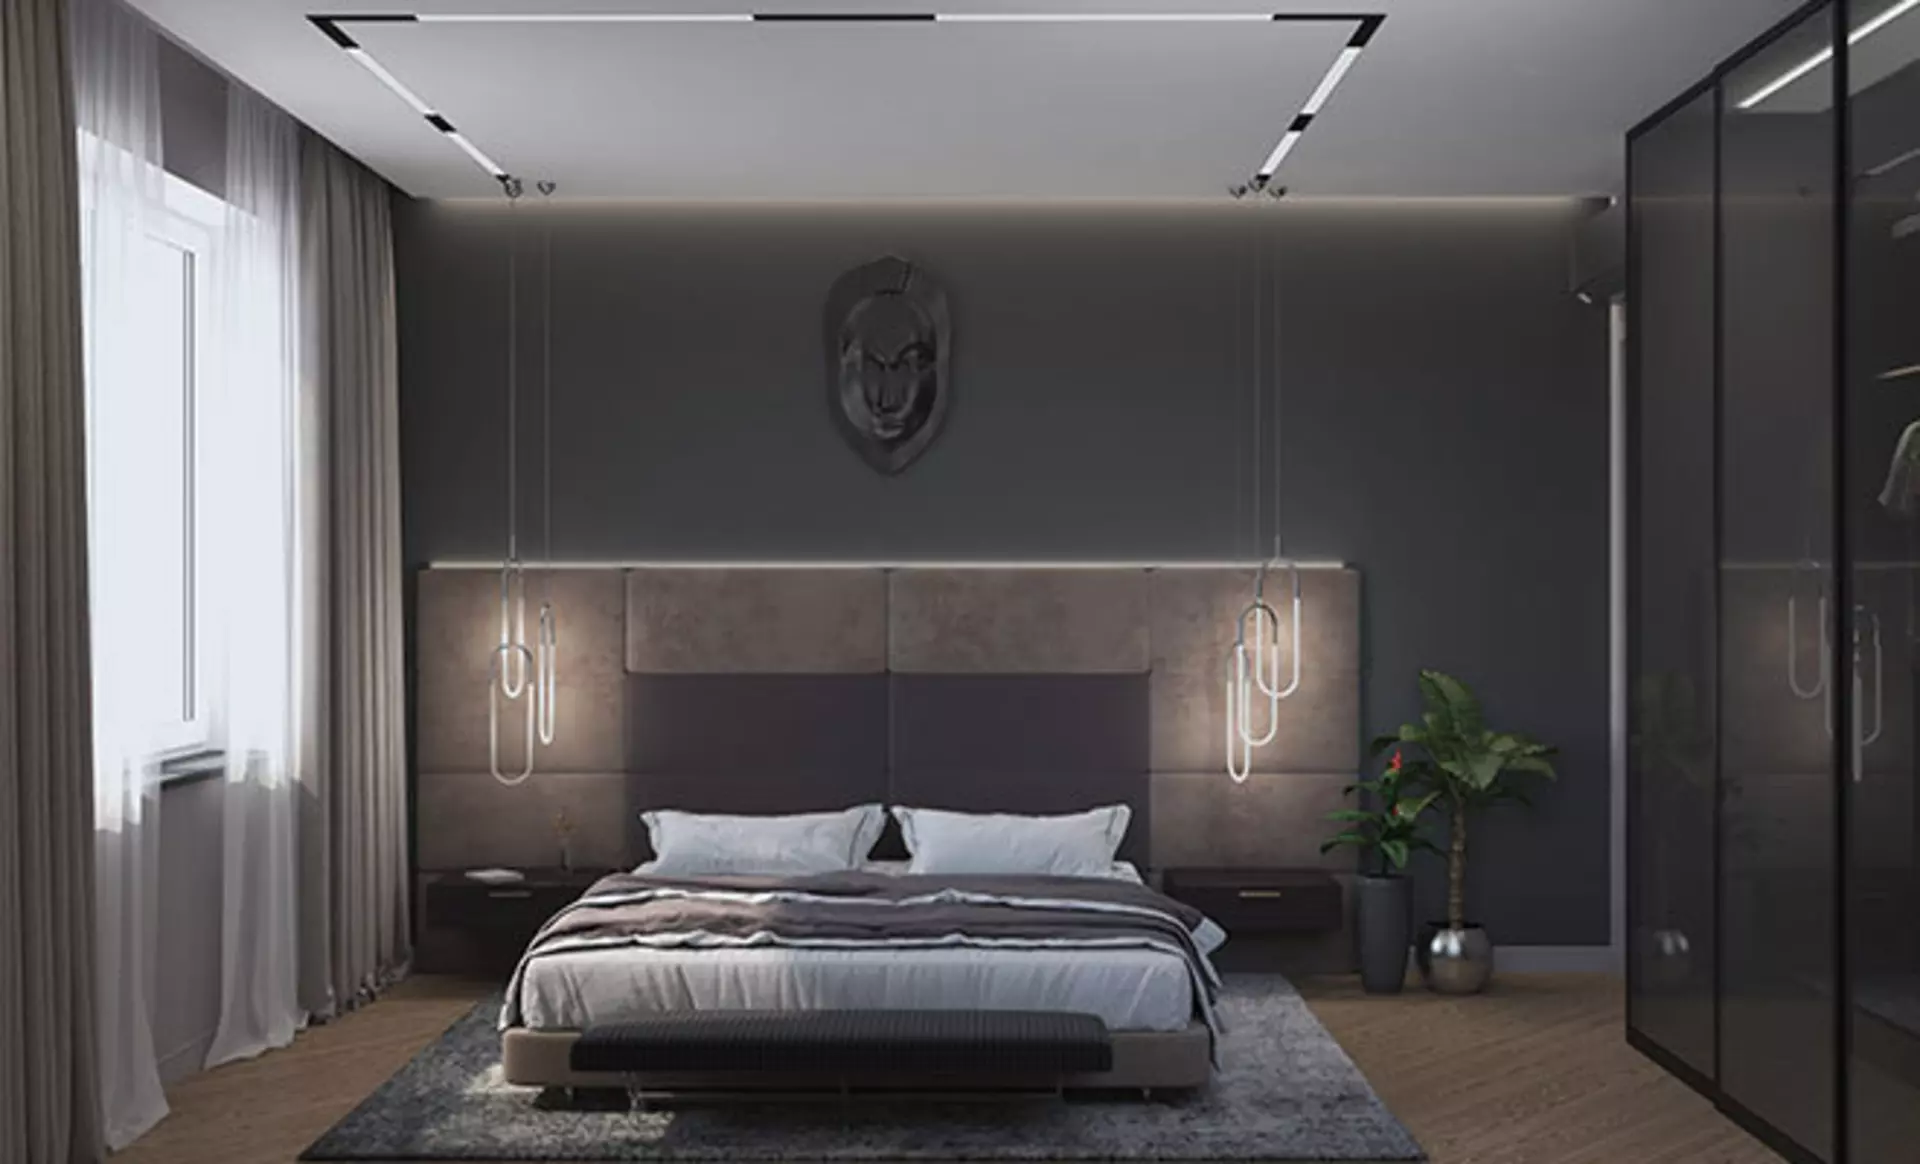 Lassen Sie sich für die Wohntrends inspirieren und entdecken Sie die perfekte Beleuchtung für das Schlafzimmer!